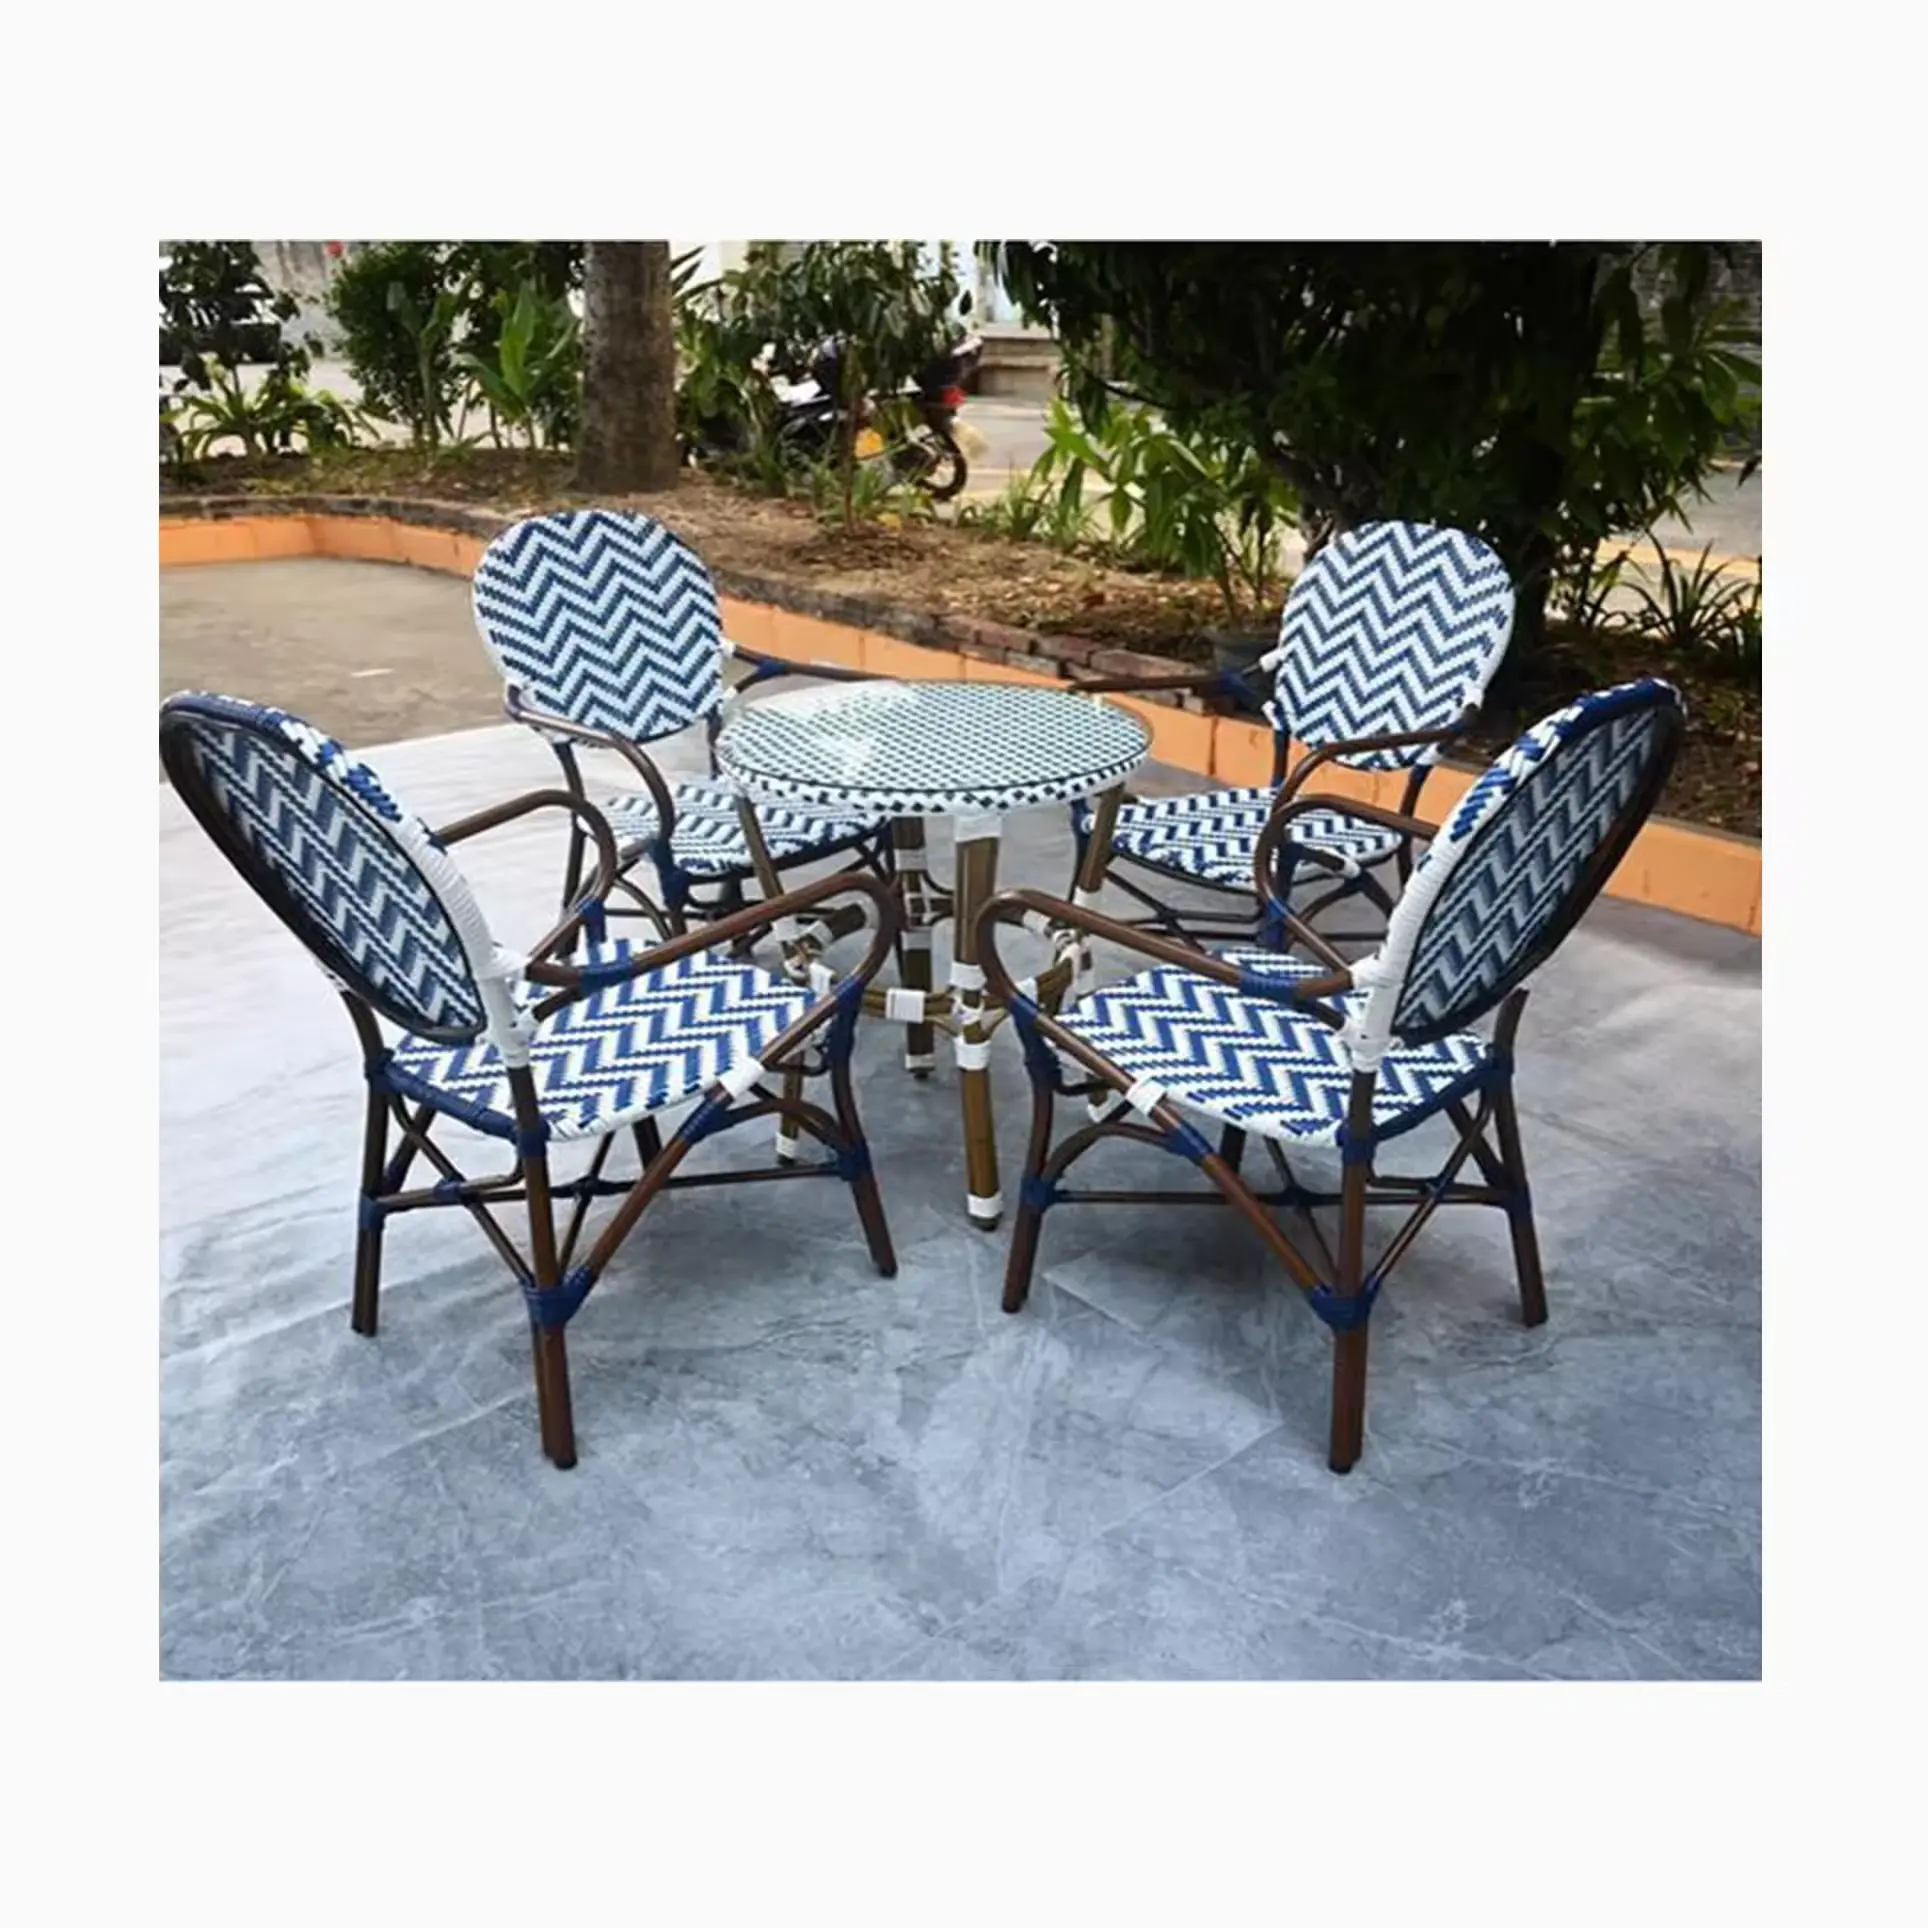 [MOJIA]30 + Tiktok sıcak stilleri açık bahçe yemek sandalyesi PE Rattan + alüminyum çerçeve renkli modeller a-mazon sandalye